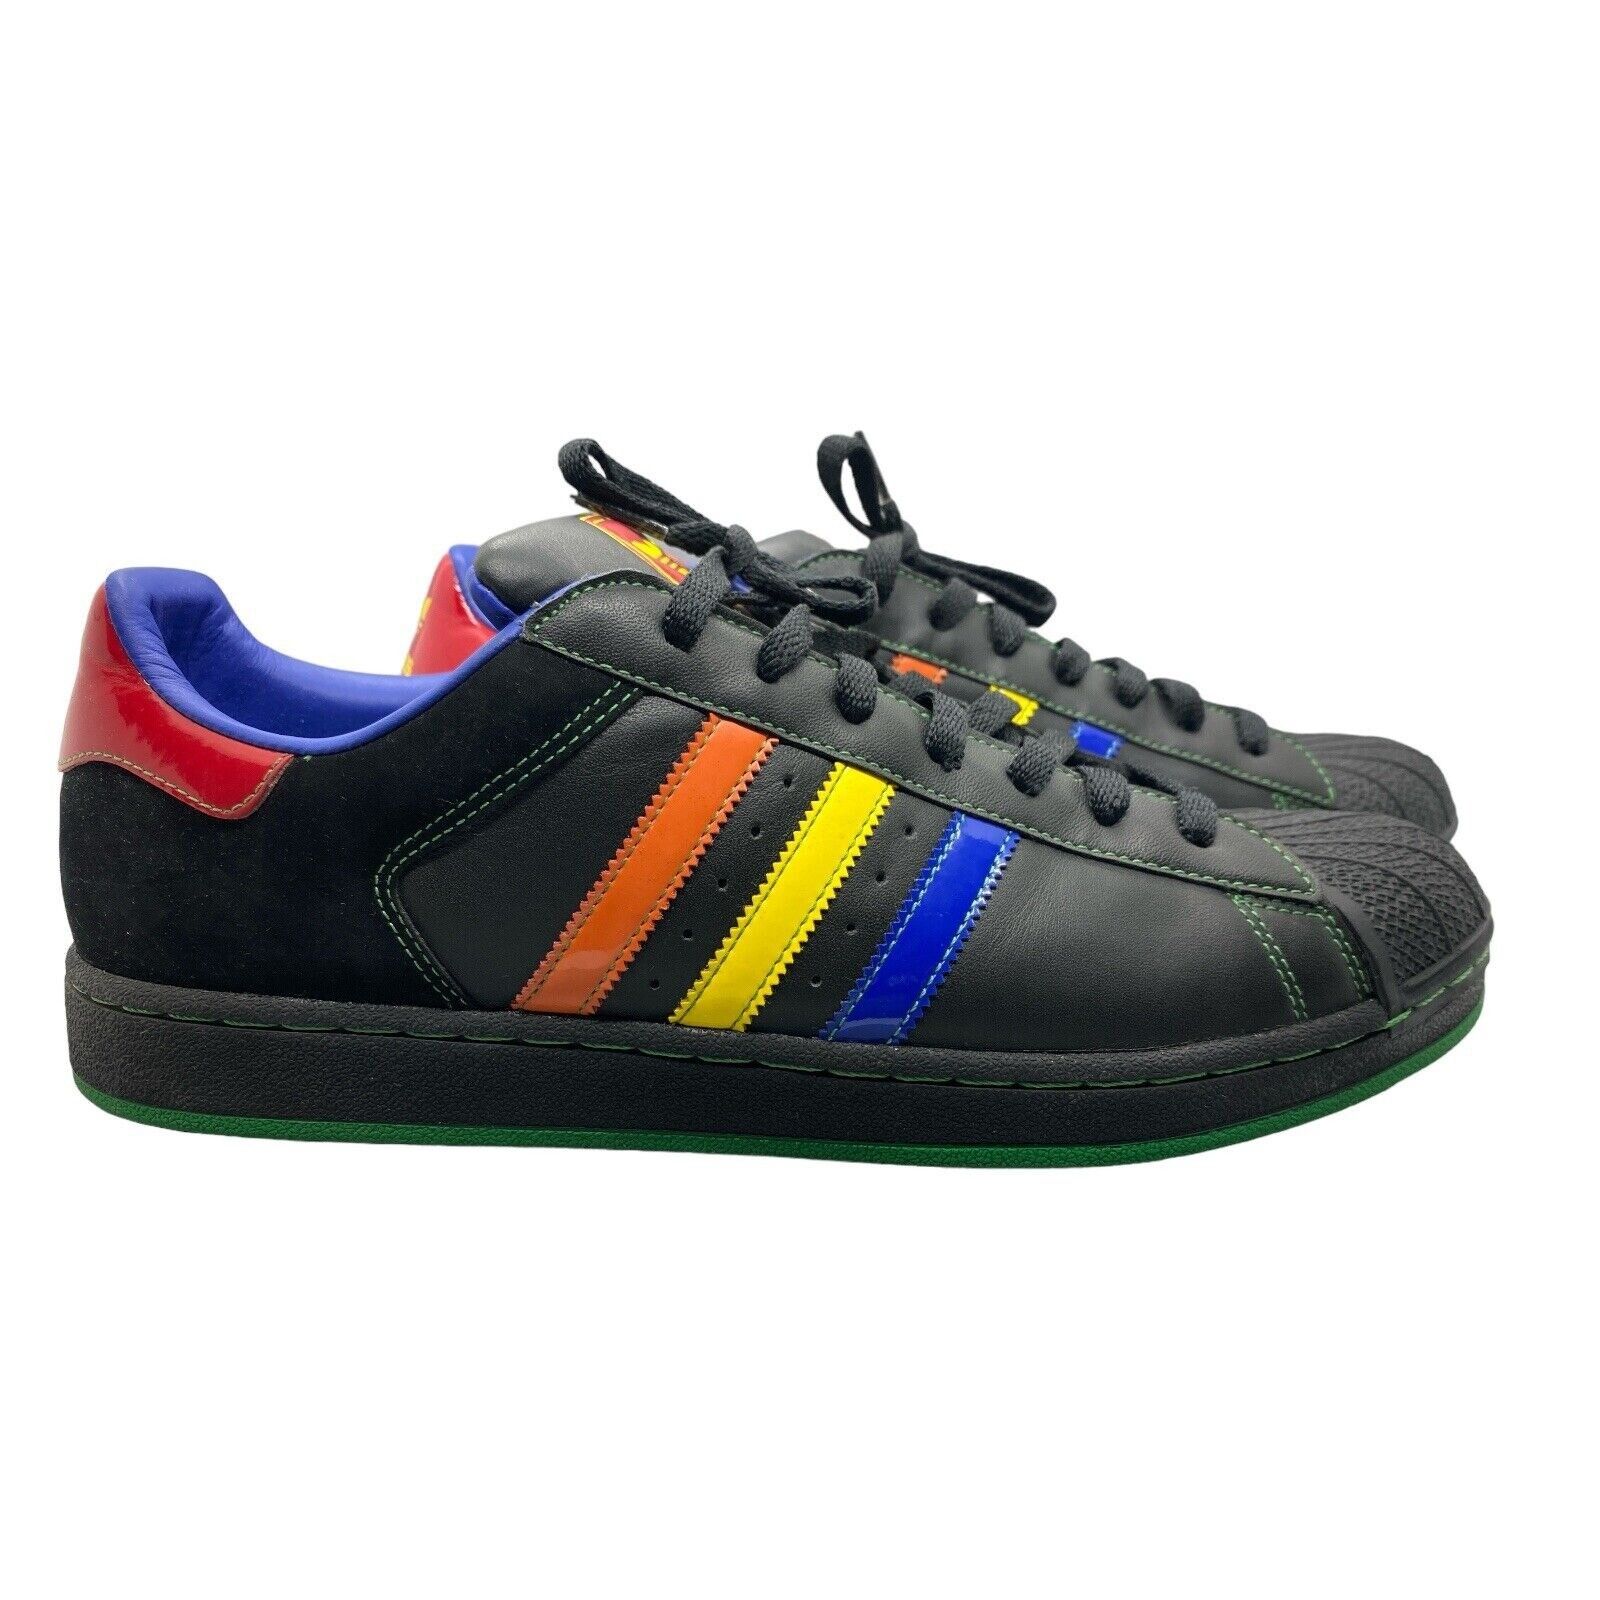 Adidas ADIDAS Original Superstar 2 II CB Black Shell Mens Sneakers Size US 13 / EU 46 - 1 Preview